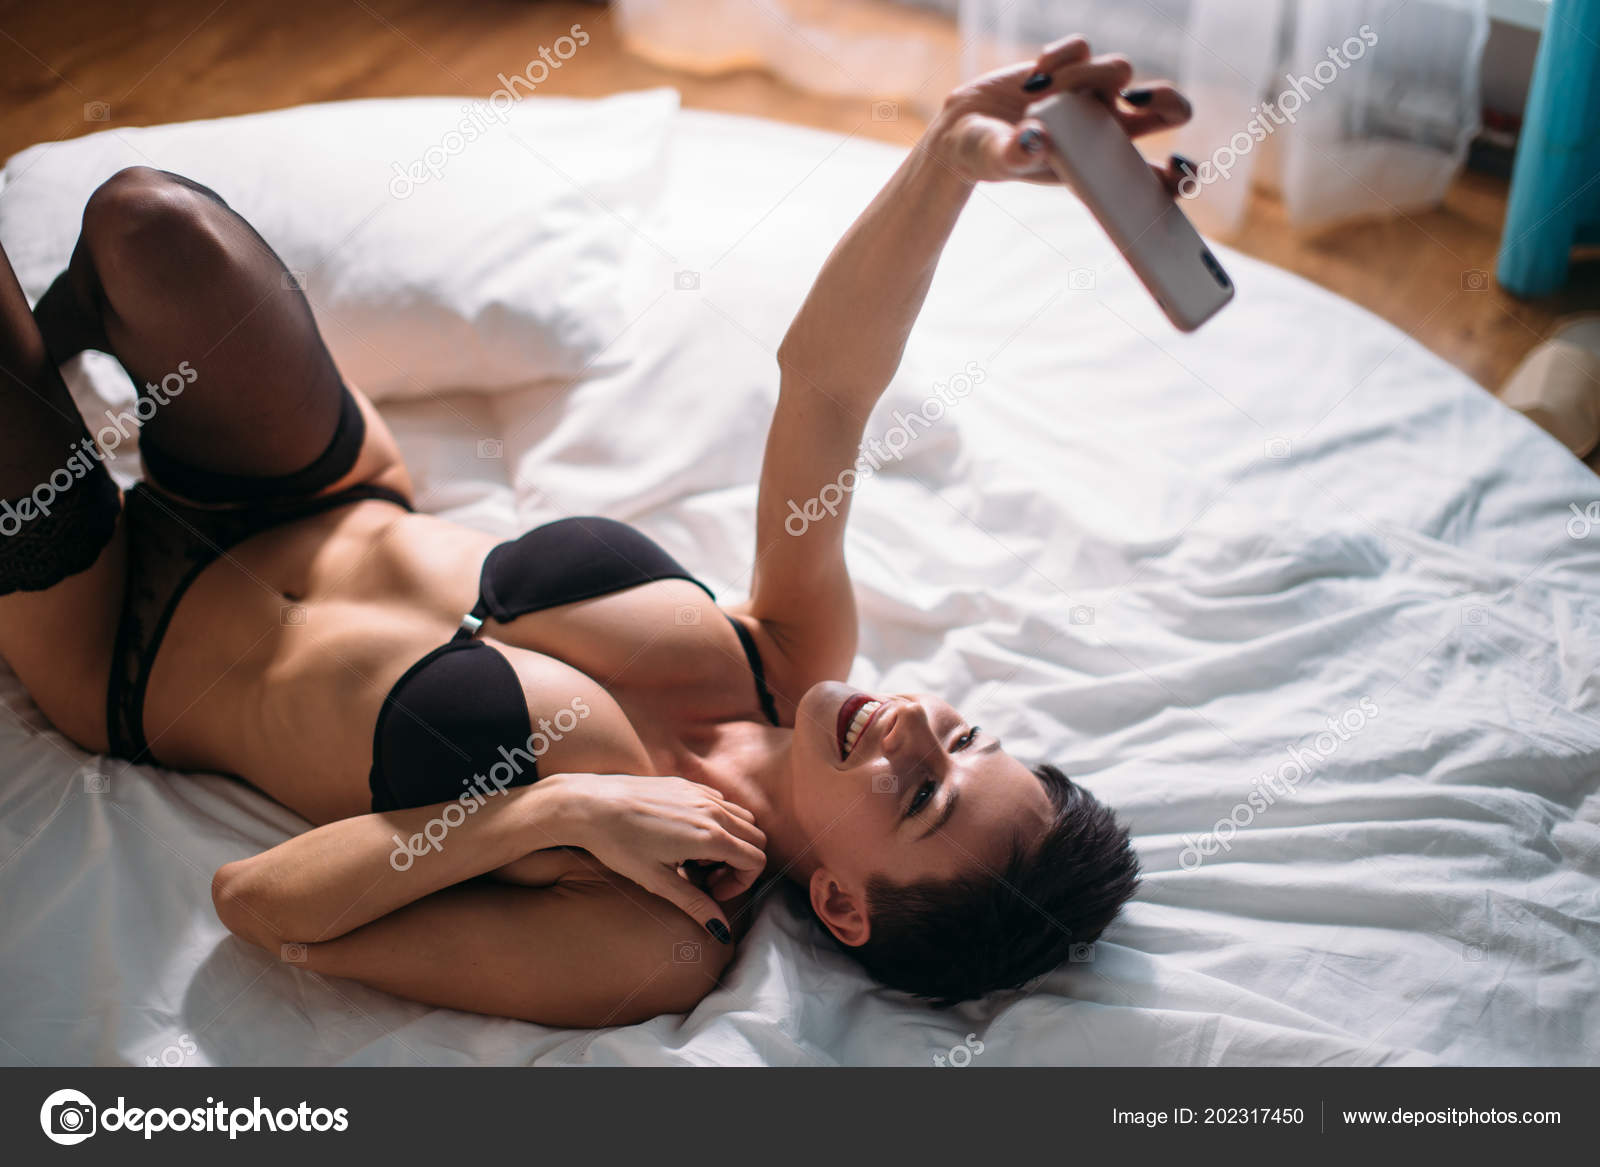 hot women bed selfies